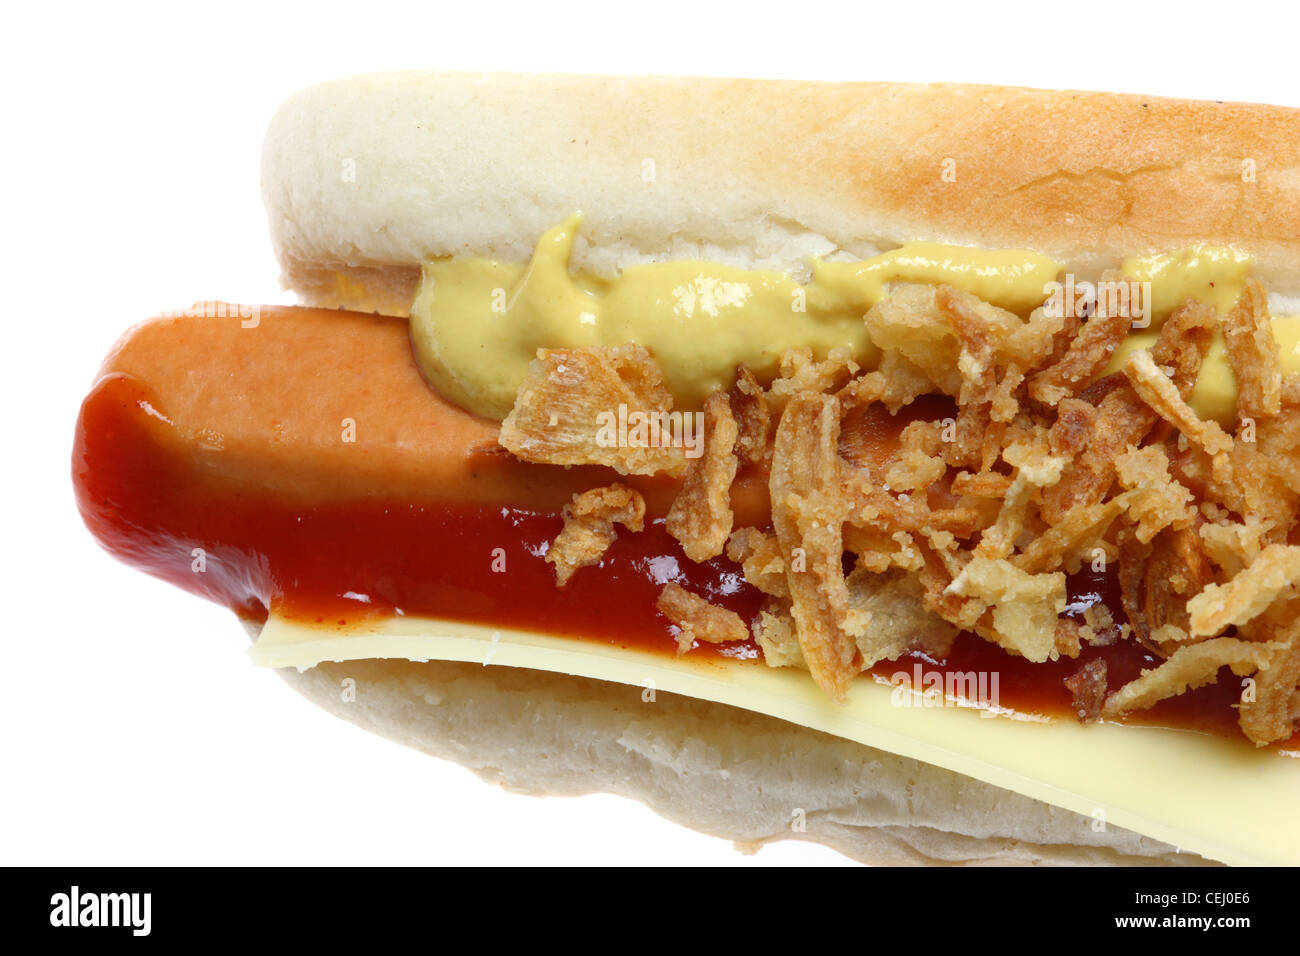 Ernährung, Fast-Food. Hot-Dog. Gedämpfte Wurst in ein Brötchen mit verschiedenen Beilagen. Stockfoto